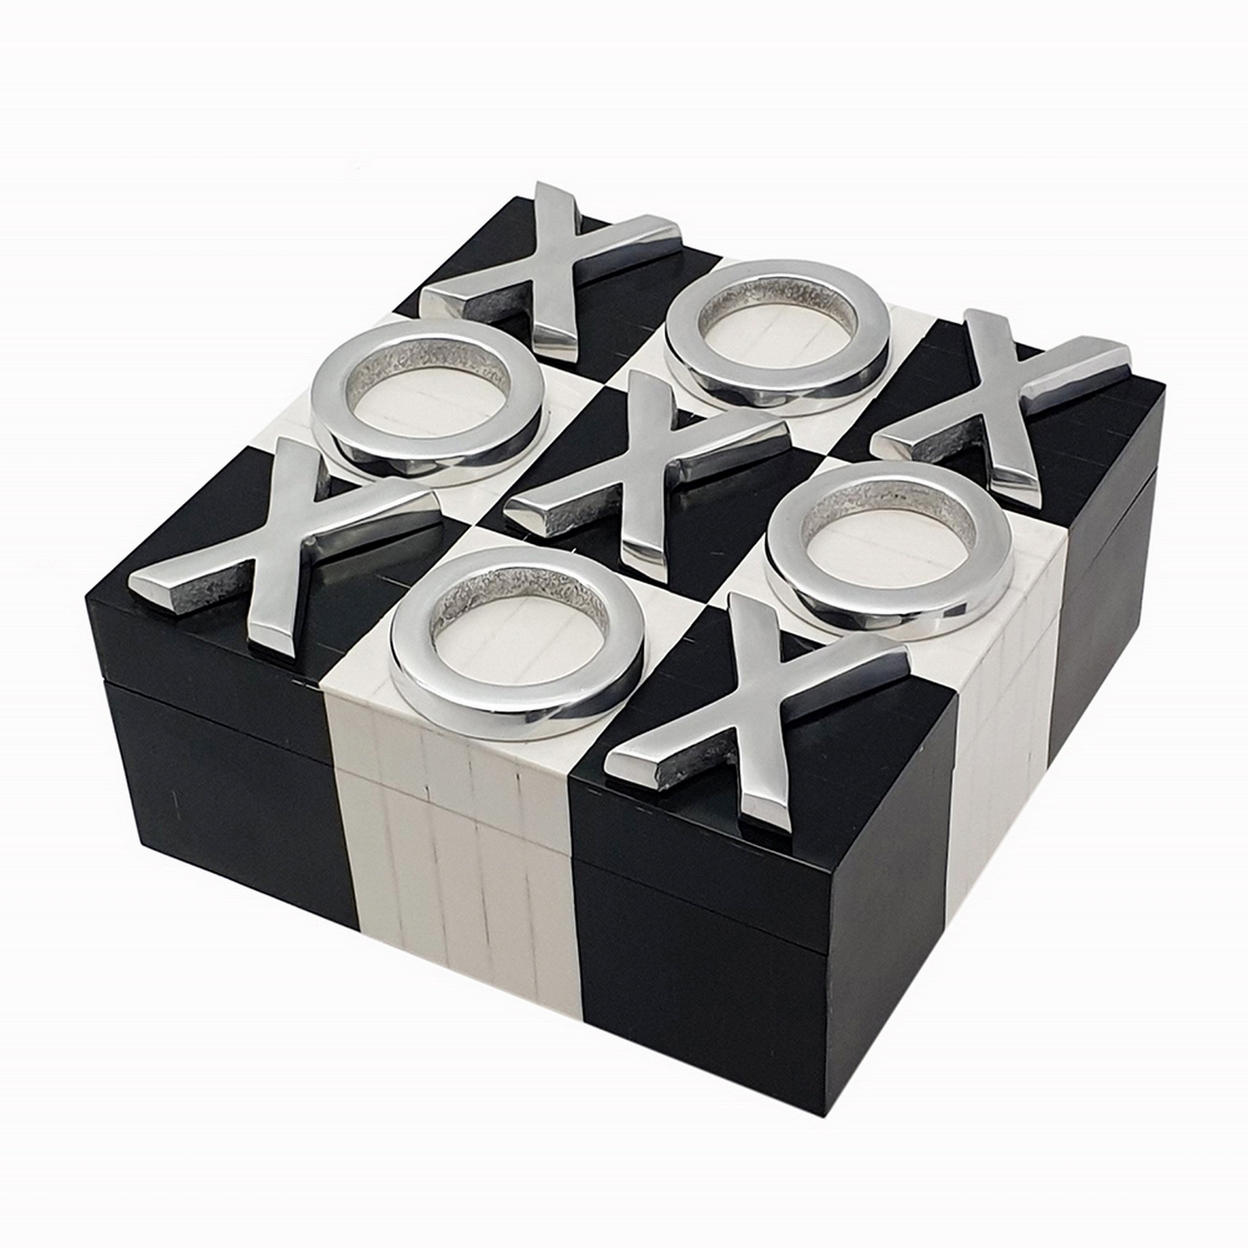 8 Inch Decorative Tic Tac Toe Square Game Box, Silver Pieces, Black, White- Saltoro Sherpi